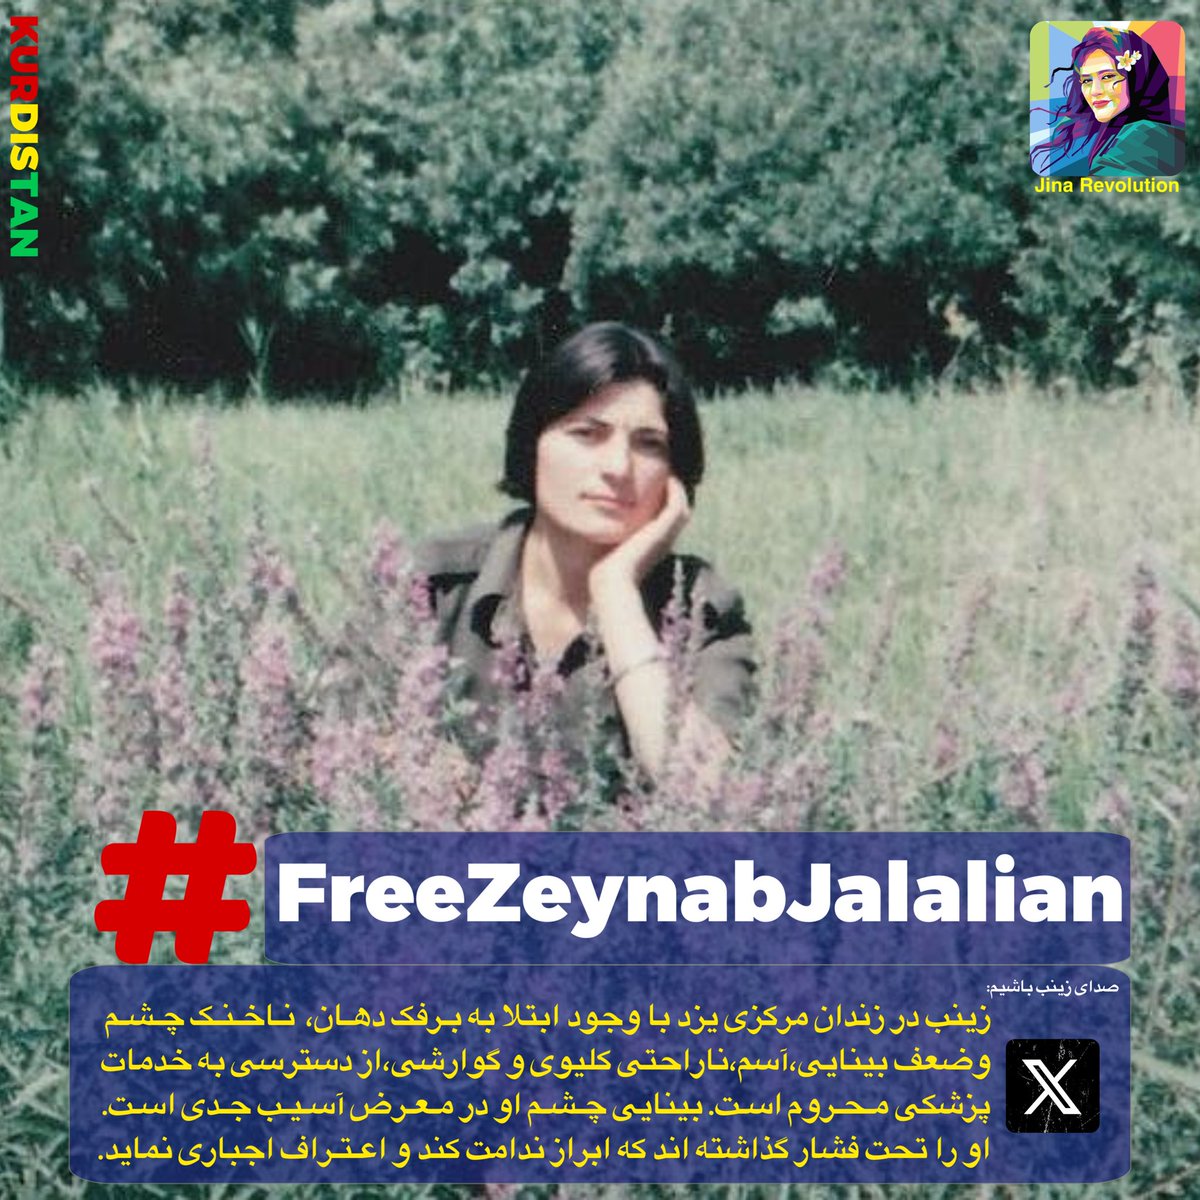 I am Zainab Jalalian
I am the imprisoned Kurdish girl

#FreeZeynabJalalian